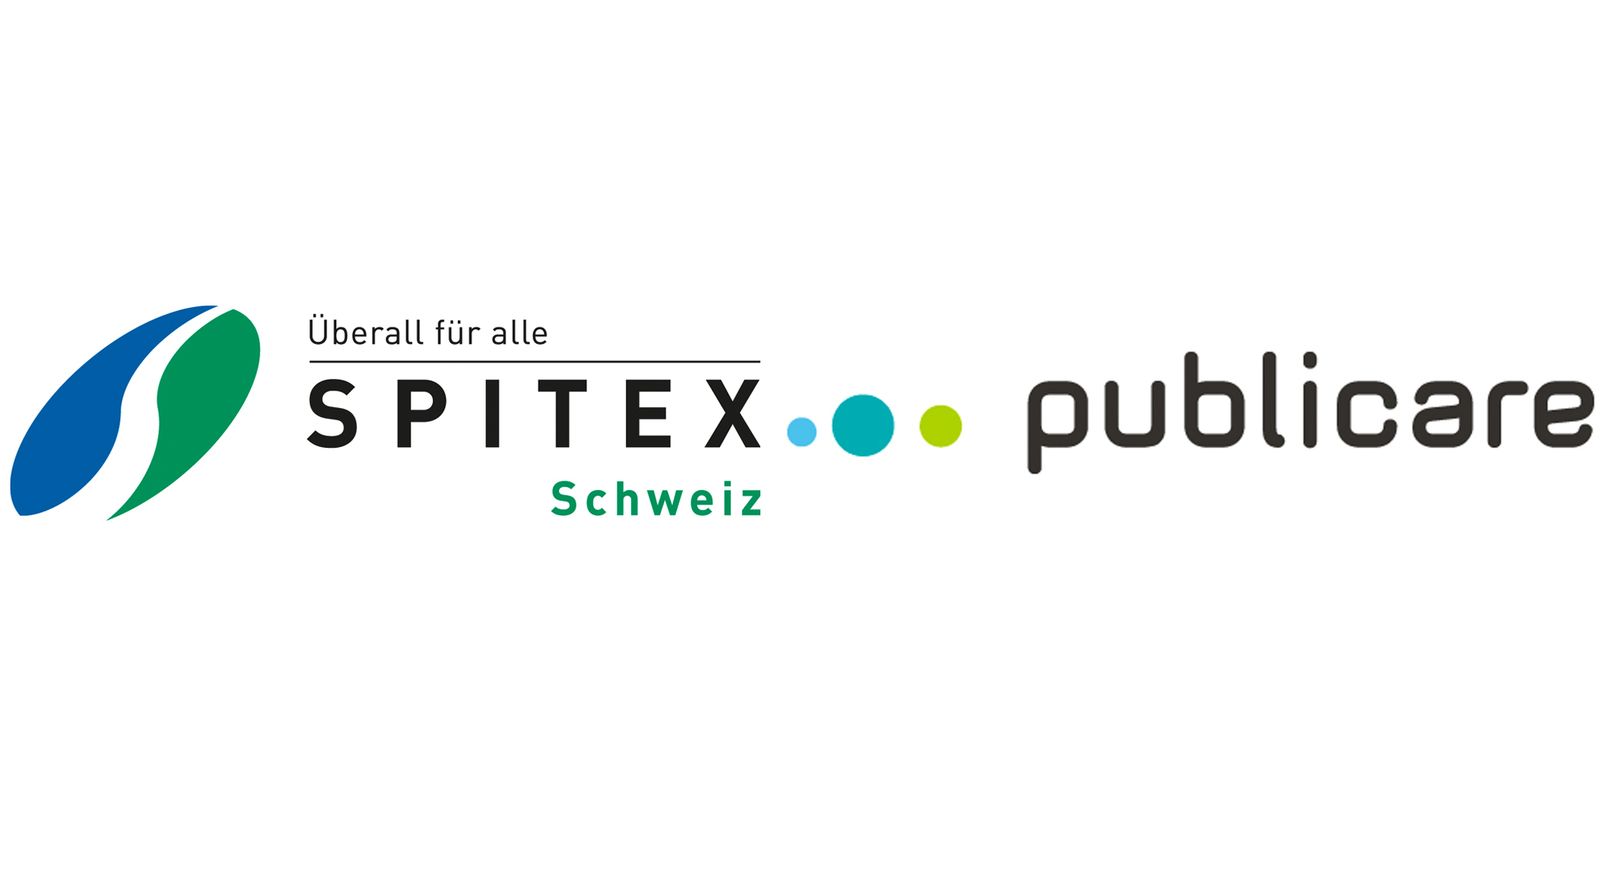 Comunicato stampa: Publicare è nuovo partner premium di Spitex Svizzera